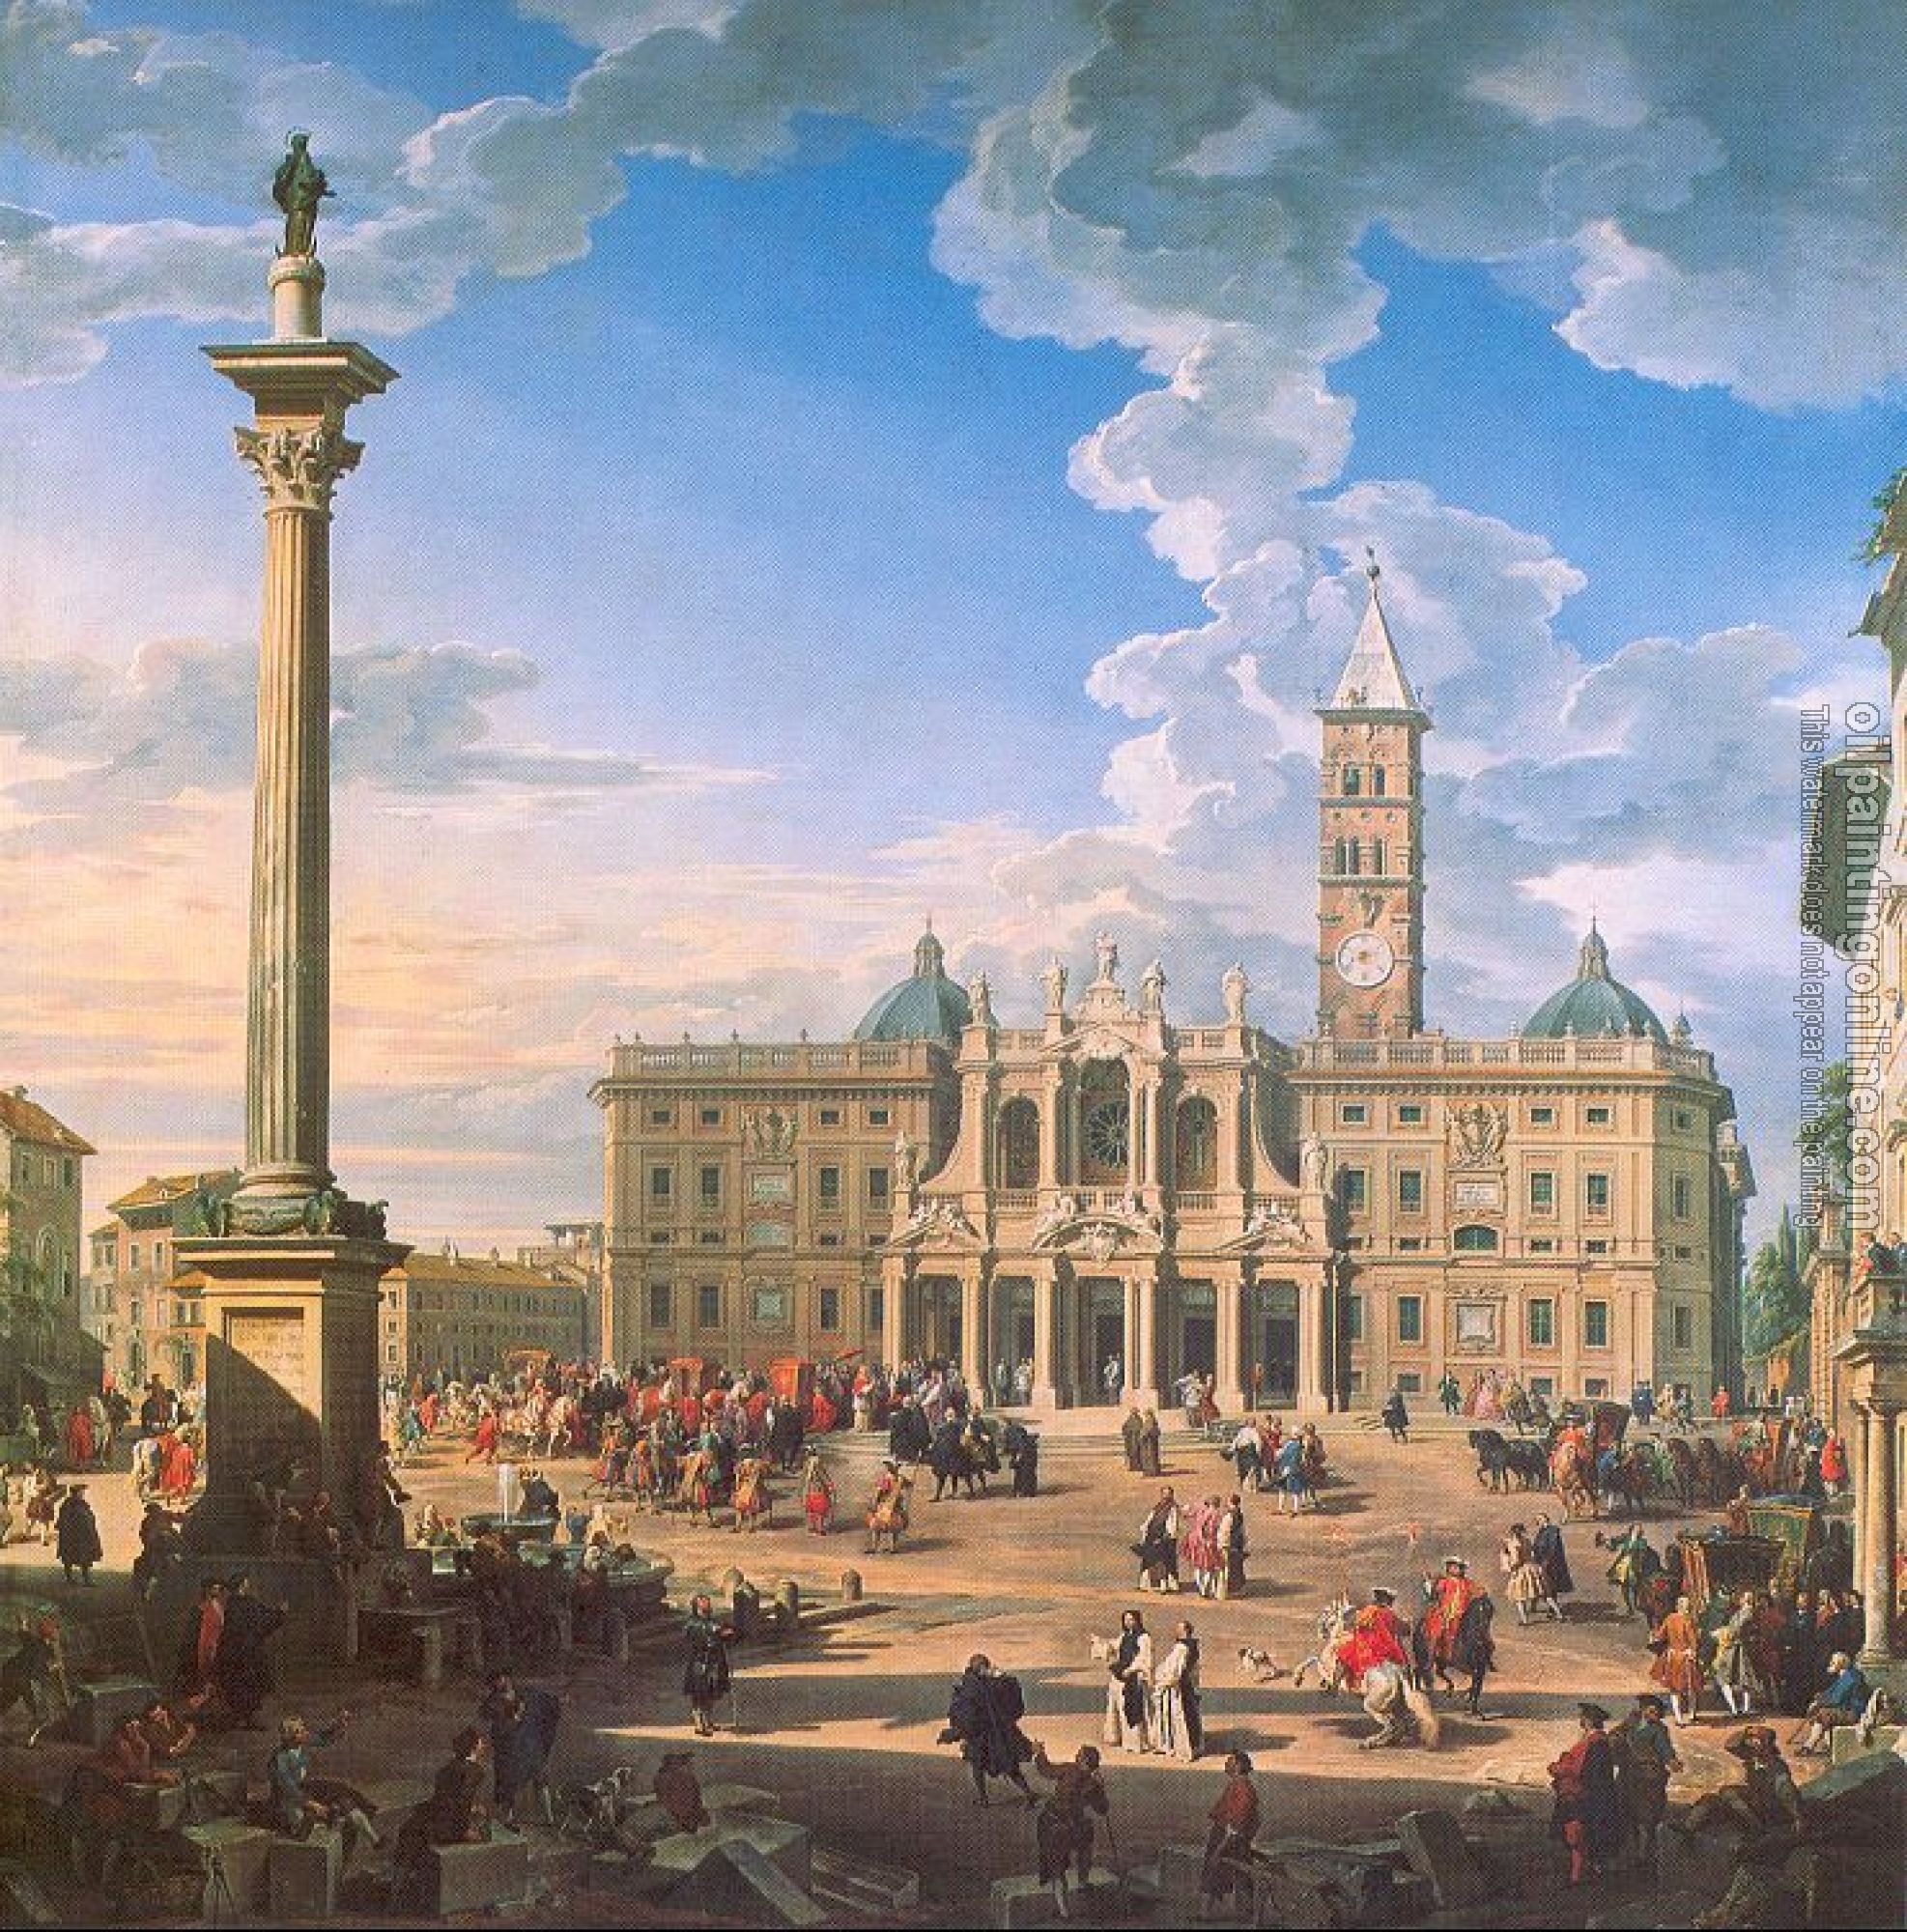 Panini, Giovanni Paolo - The Plaza and Church of St. Maria Maggiore